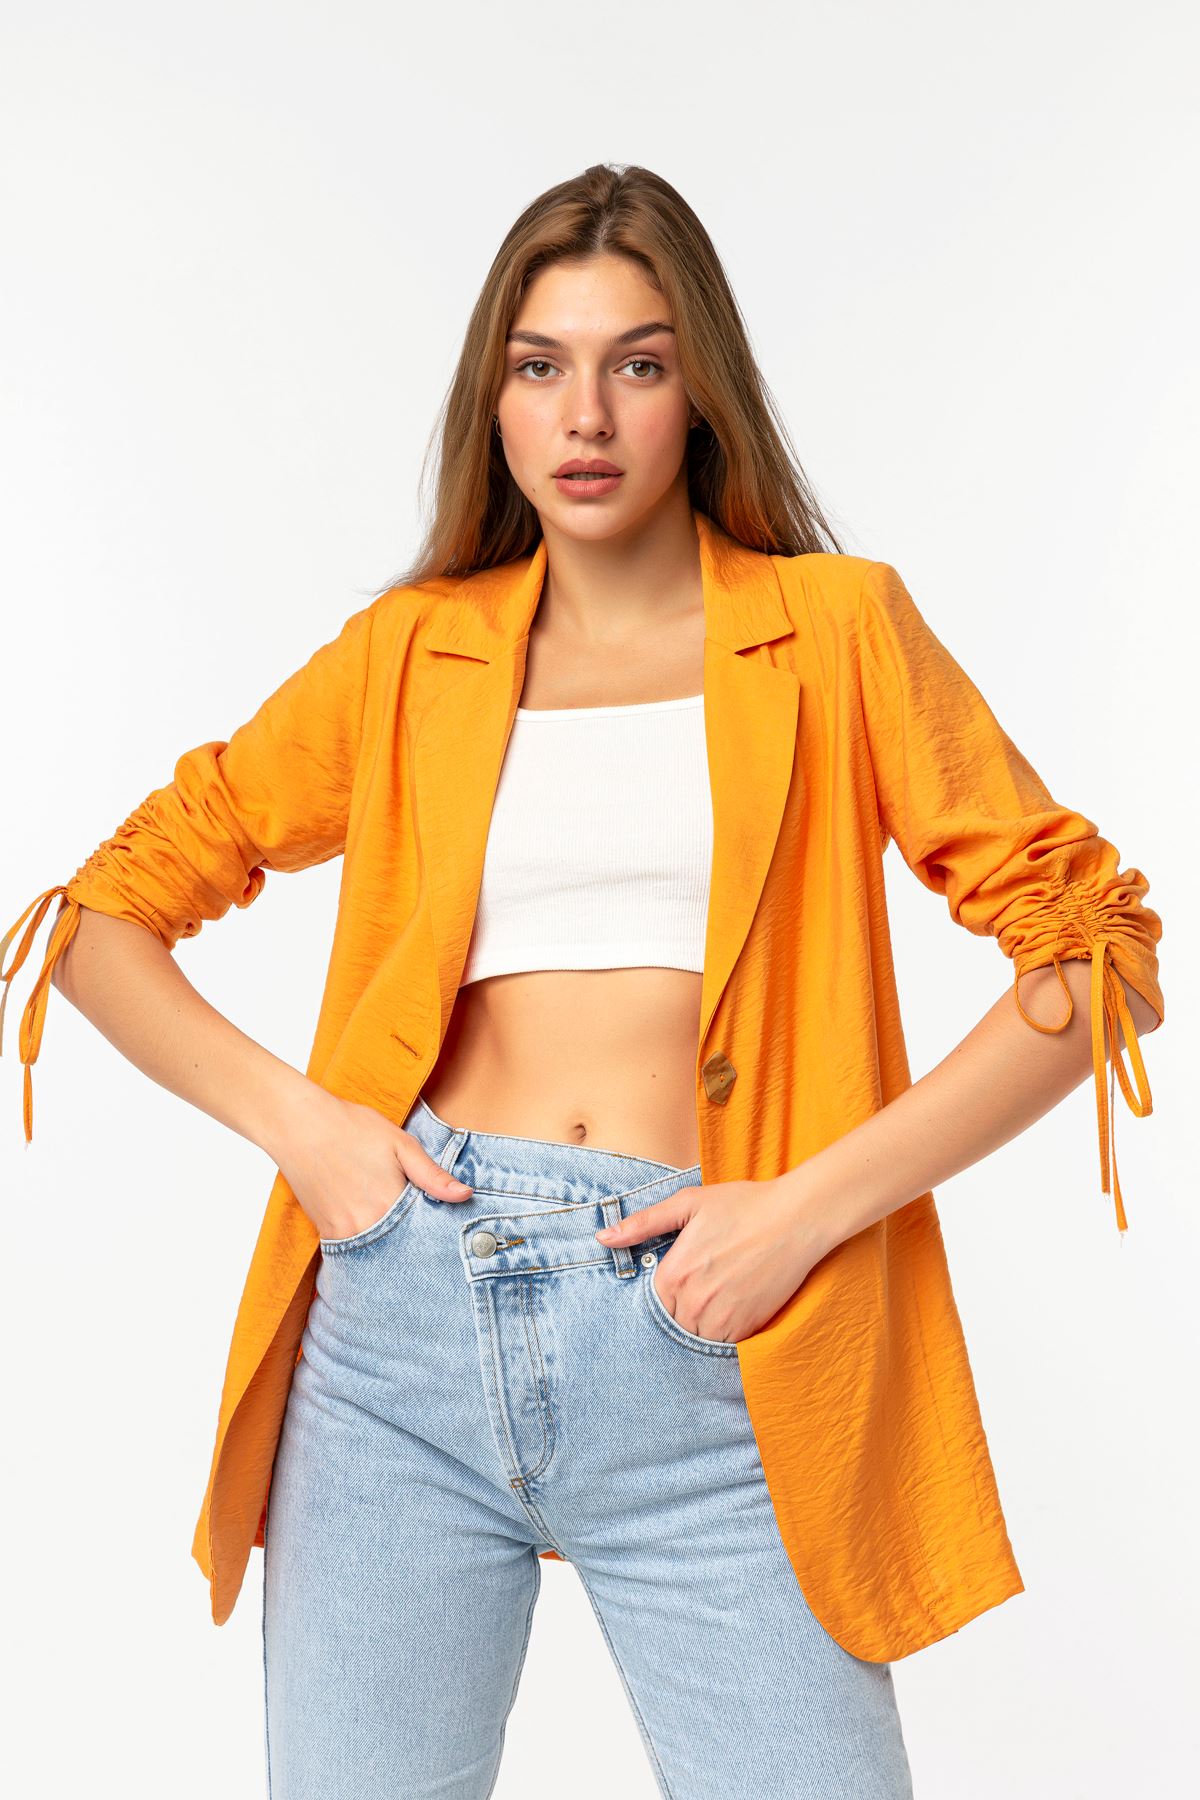 Аэробин Ткань ревер воротник высота бедра свободный женский пиджак - Оранжевый